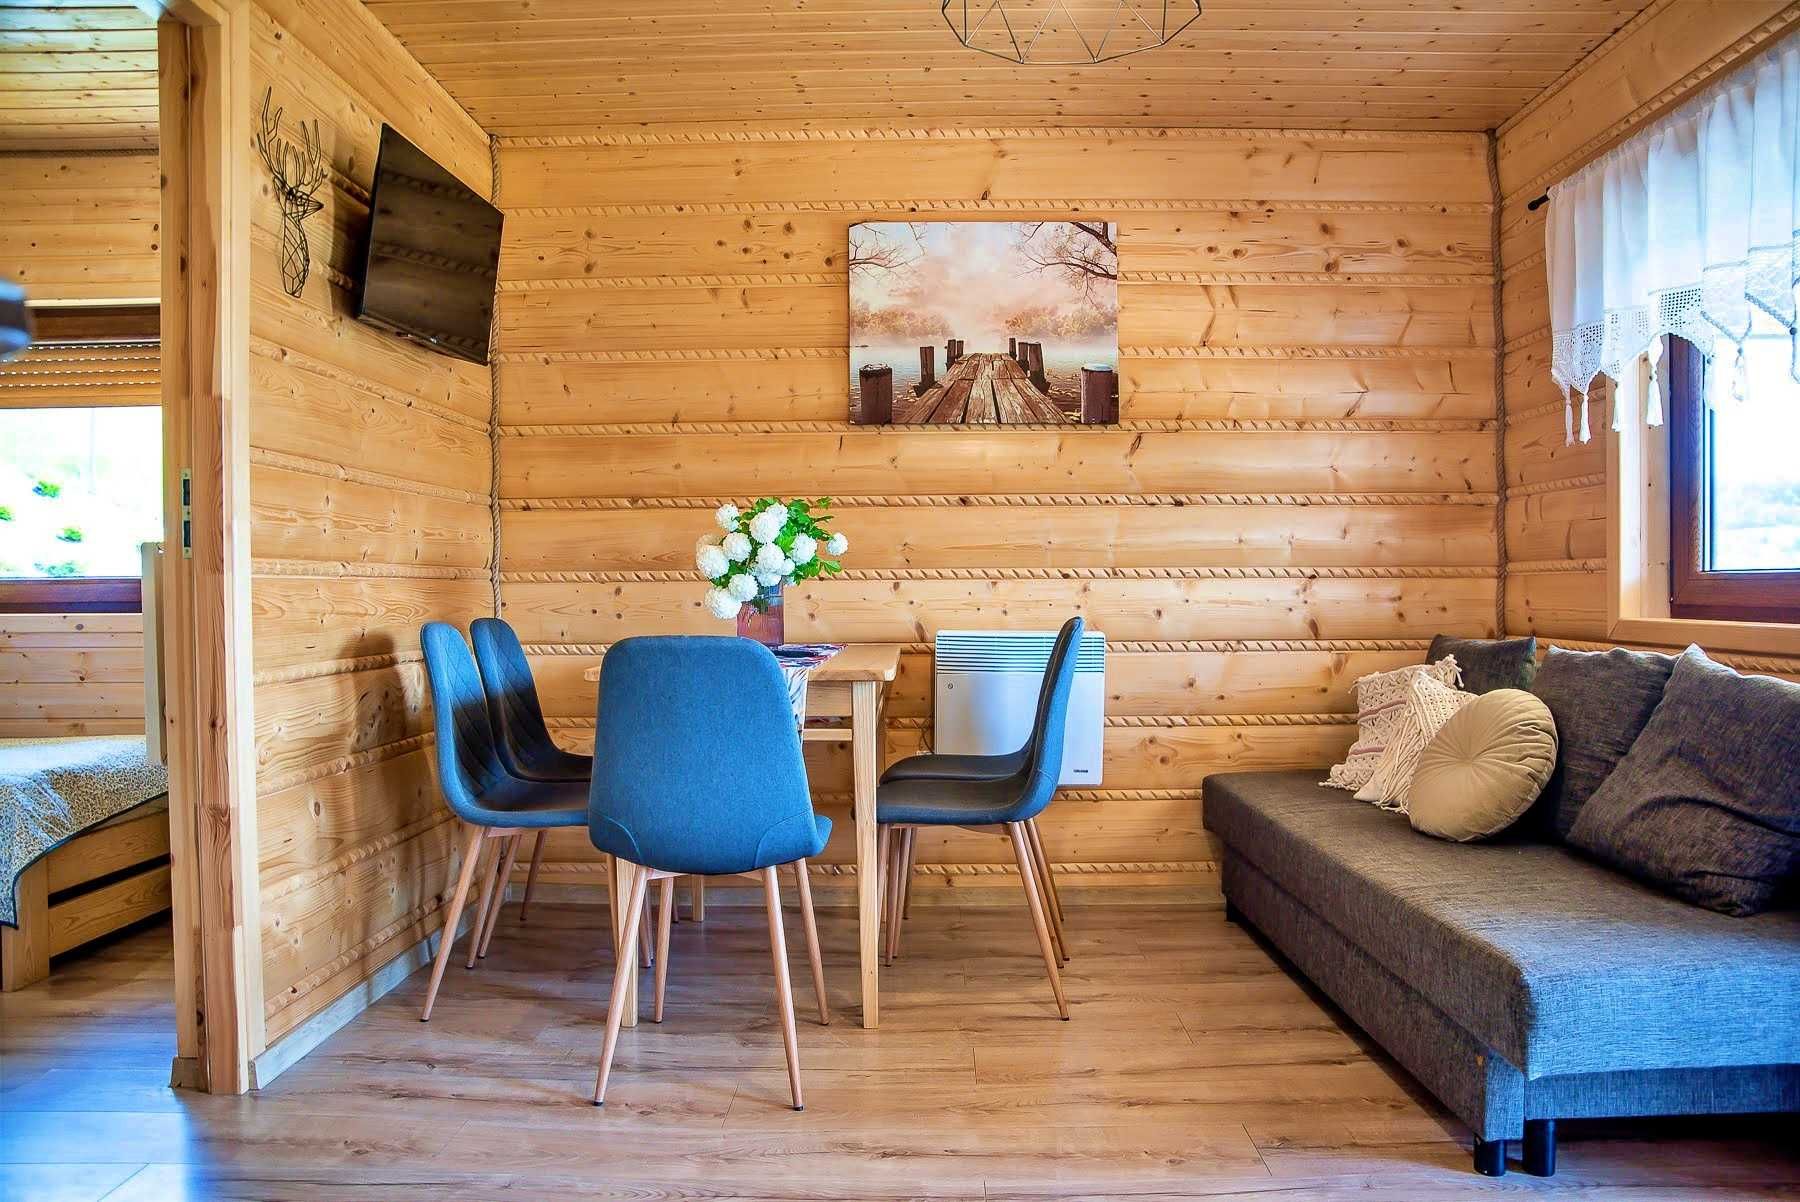 Domki w górach promocja -50% jacuzzi sauna własna plaża J, Solińskiego